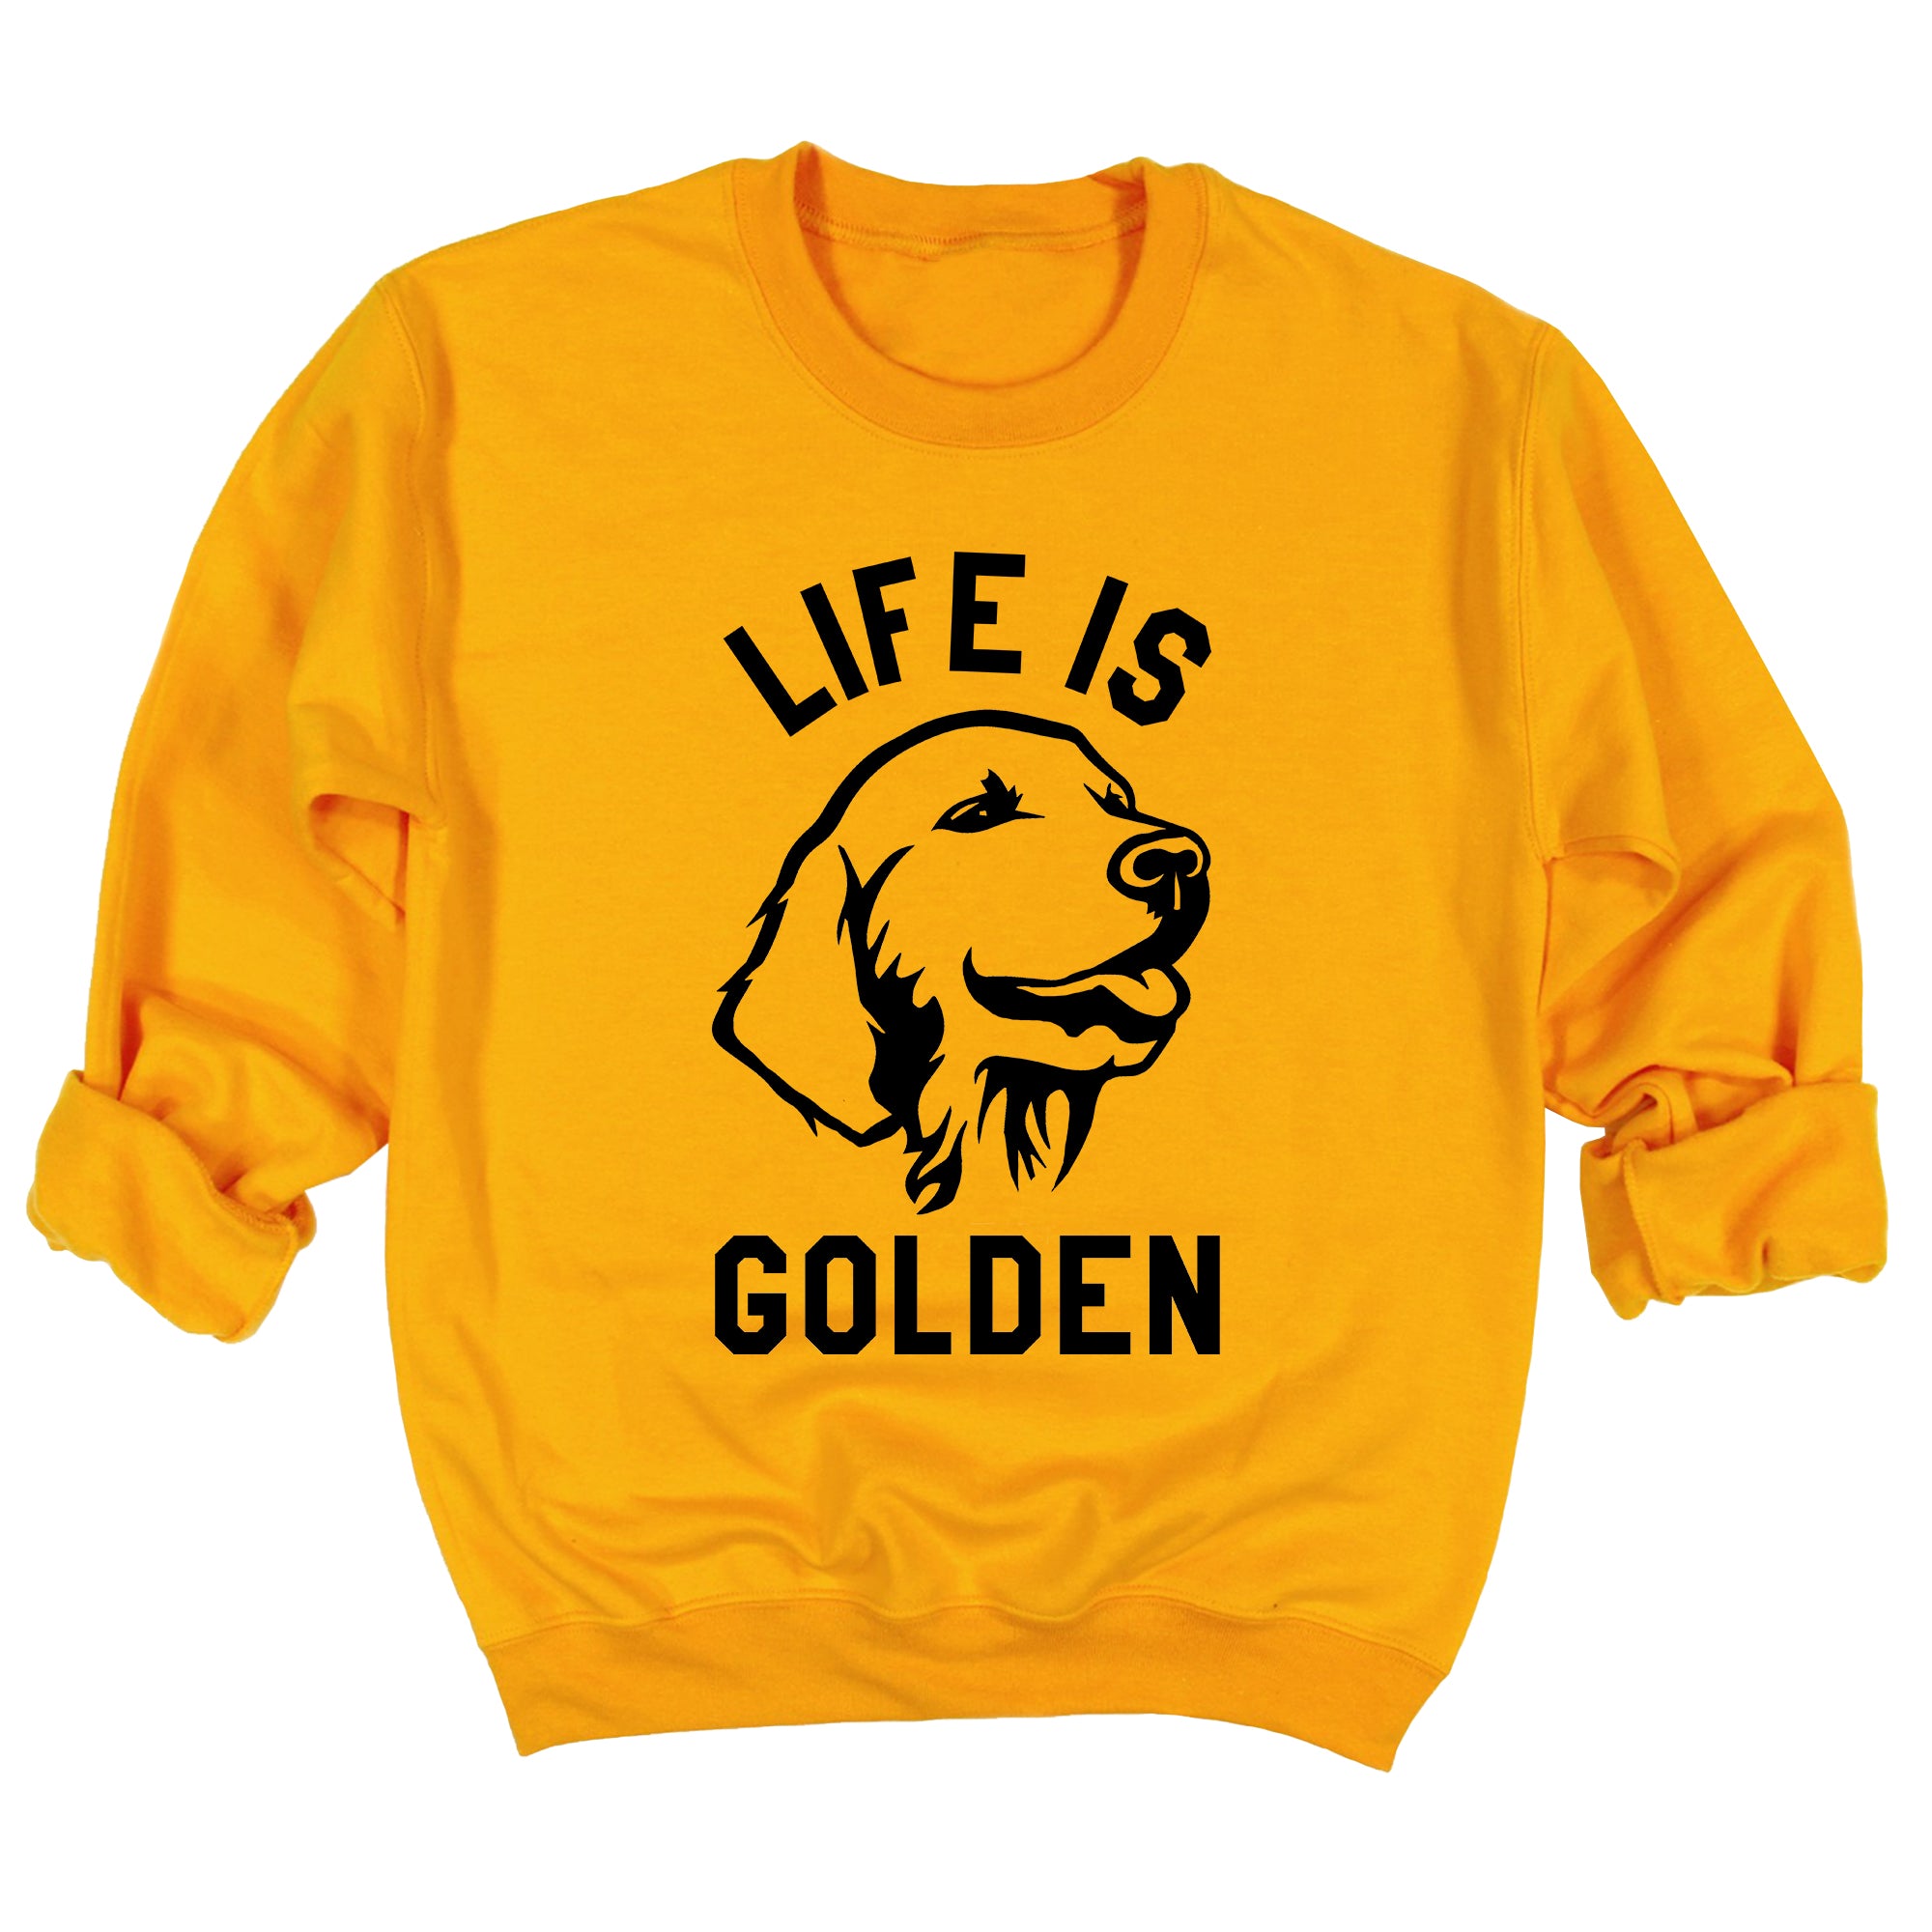 Life is Golden Sweatshirt